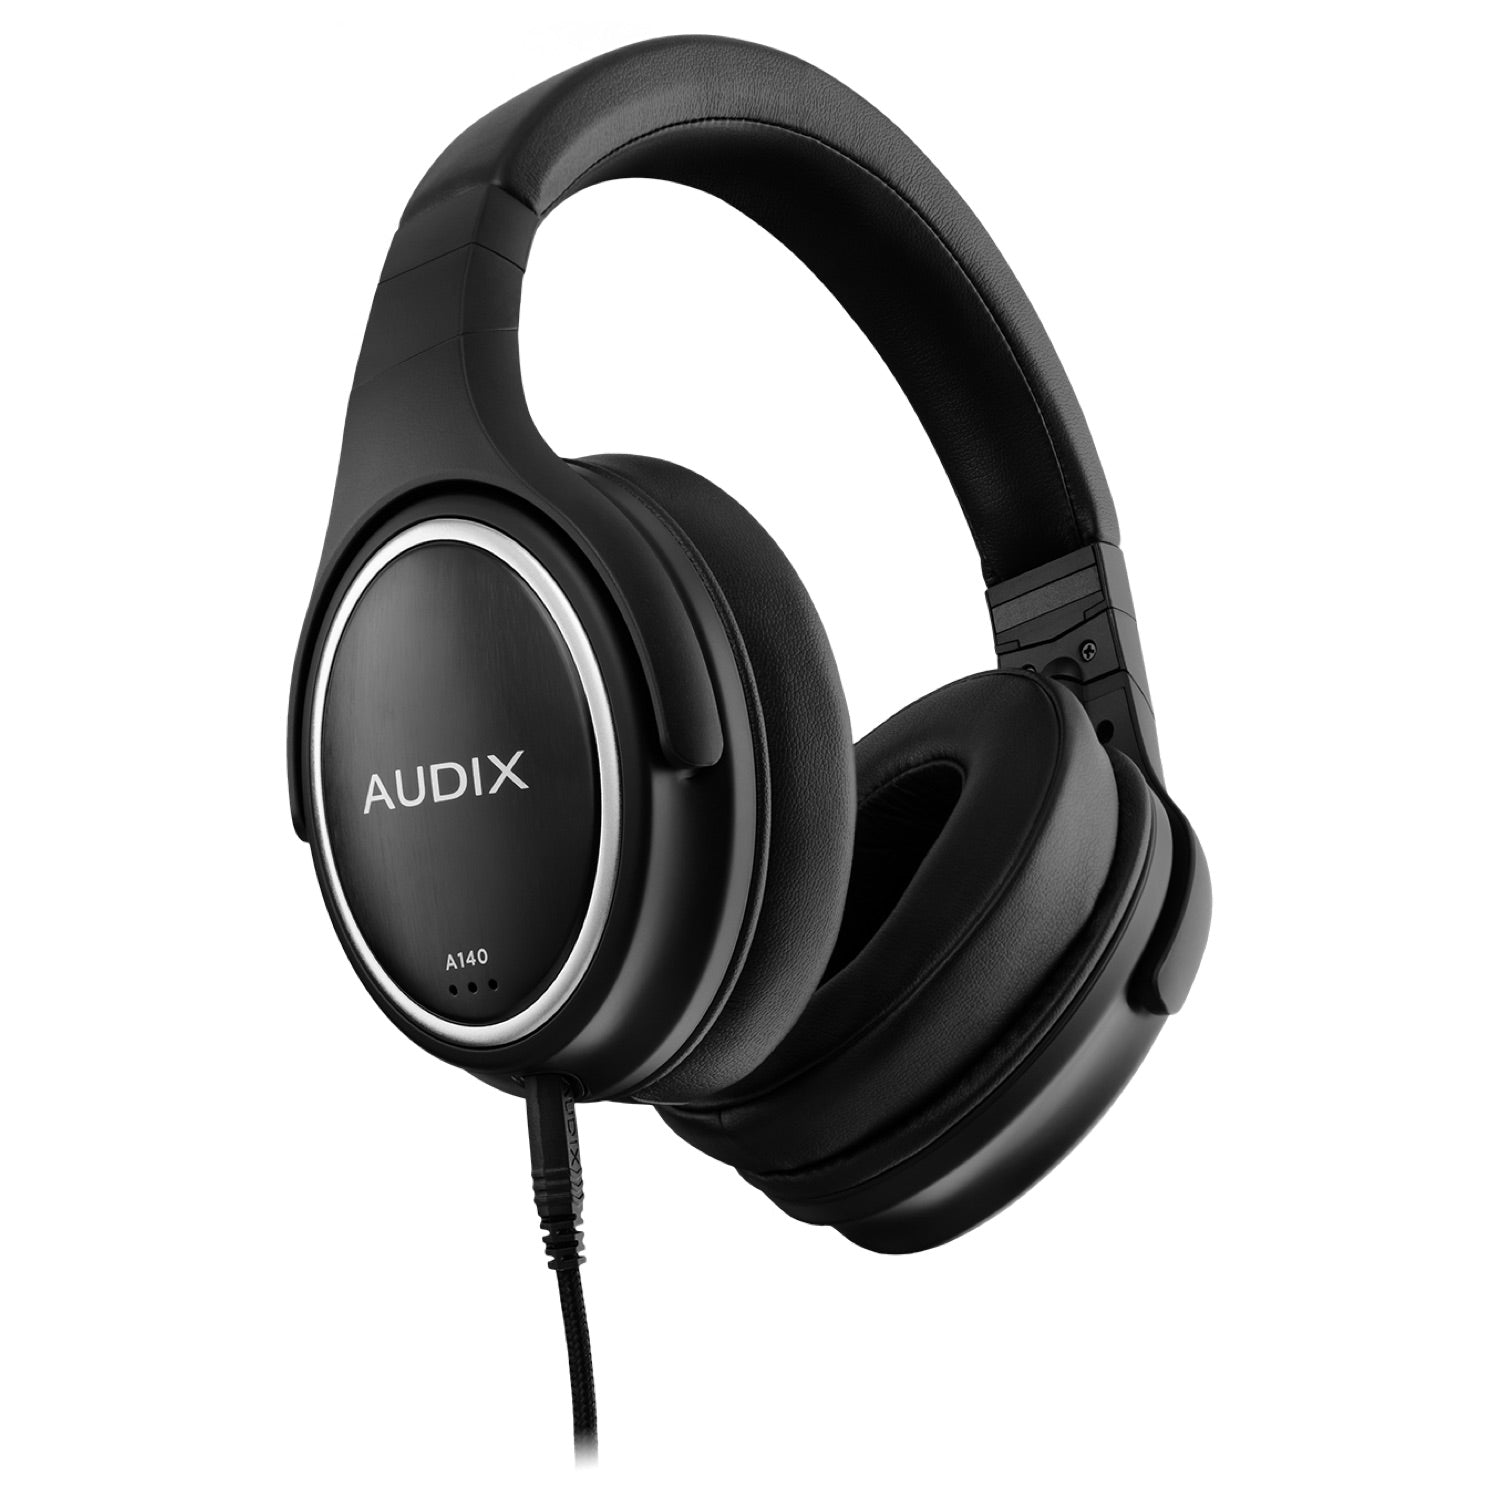 Audix A140 - Professional Studio Headphones